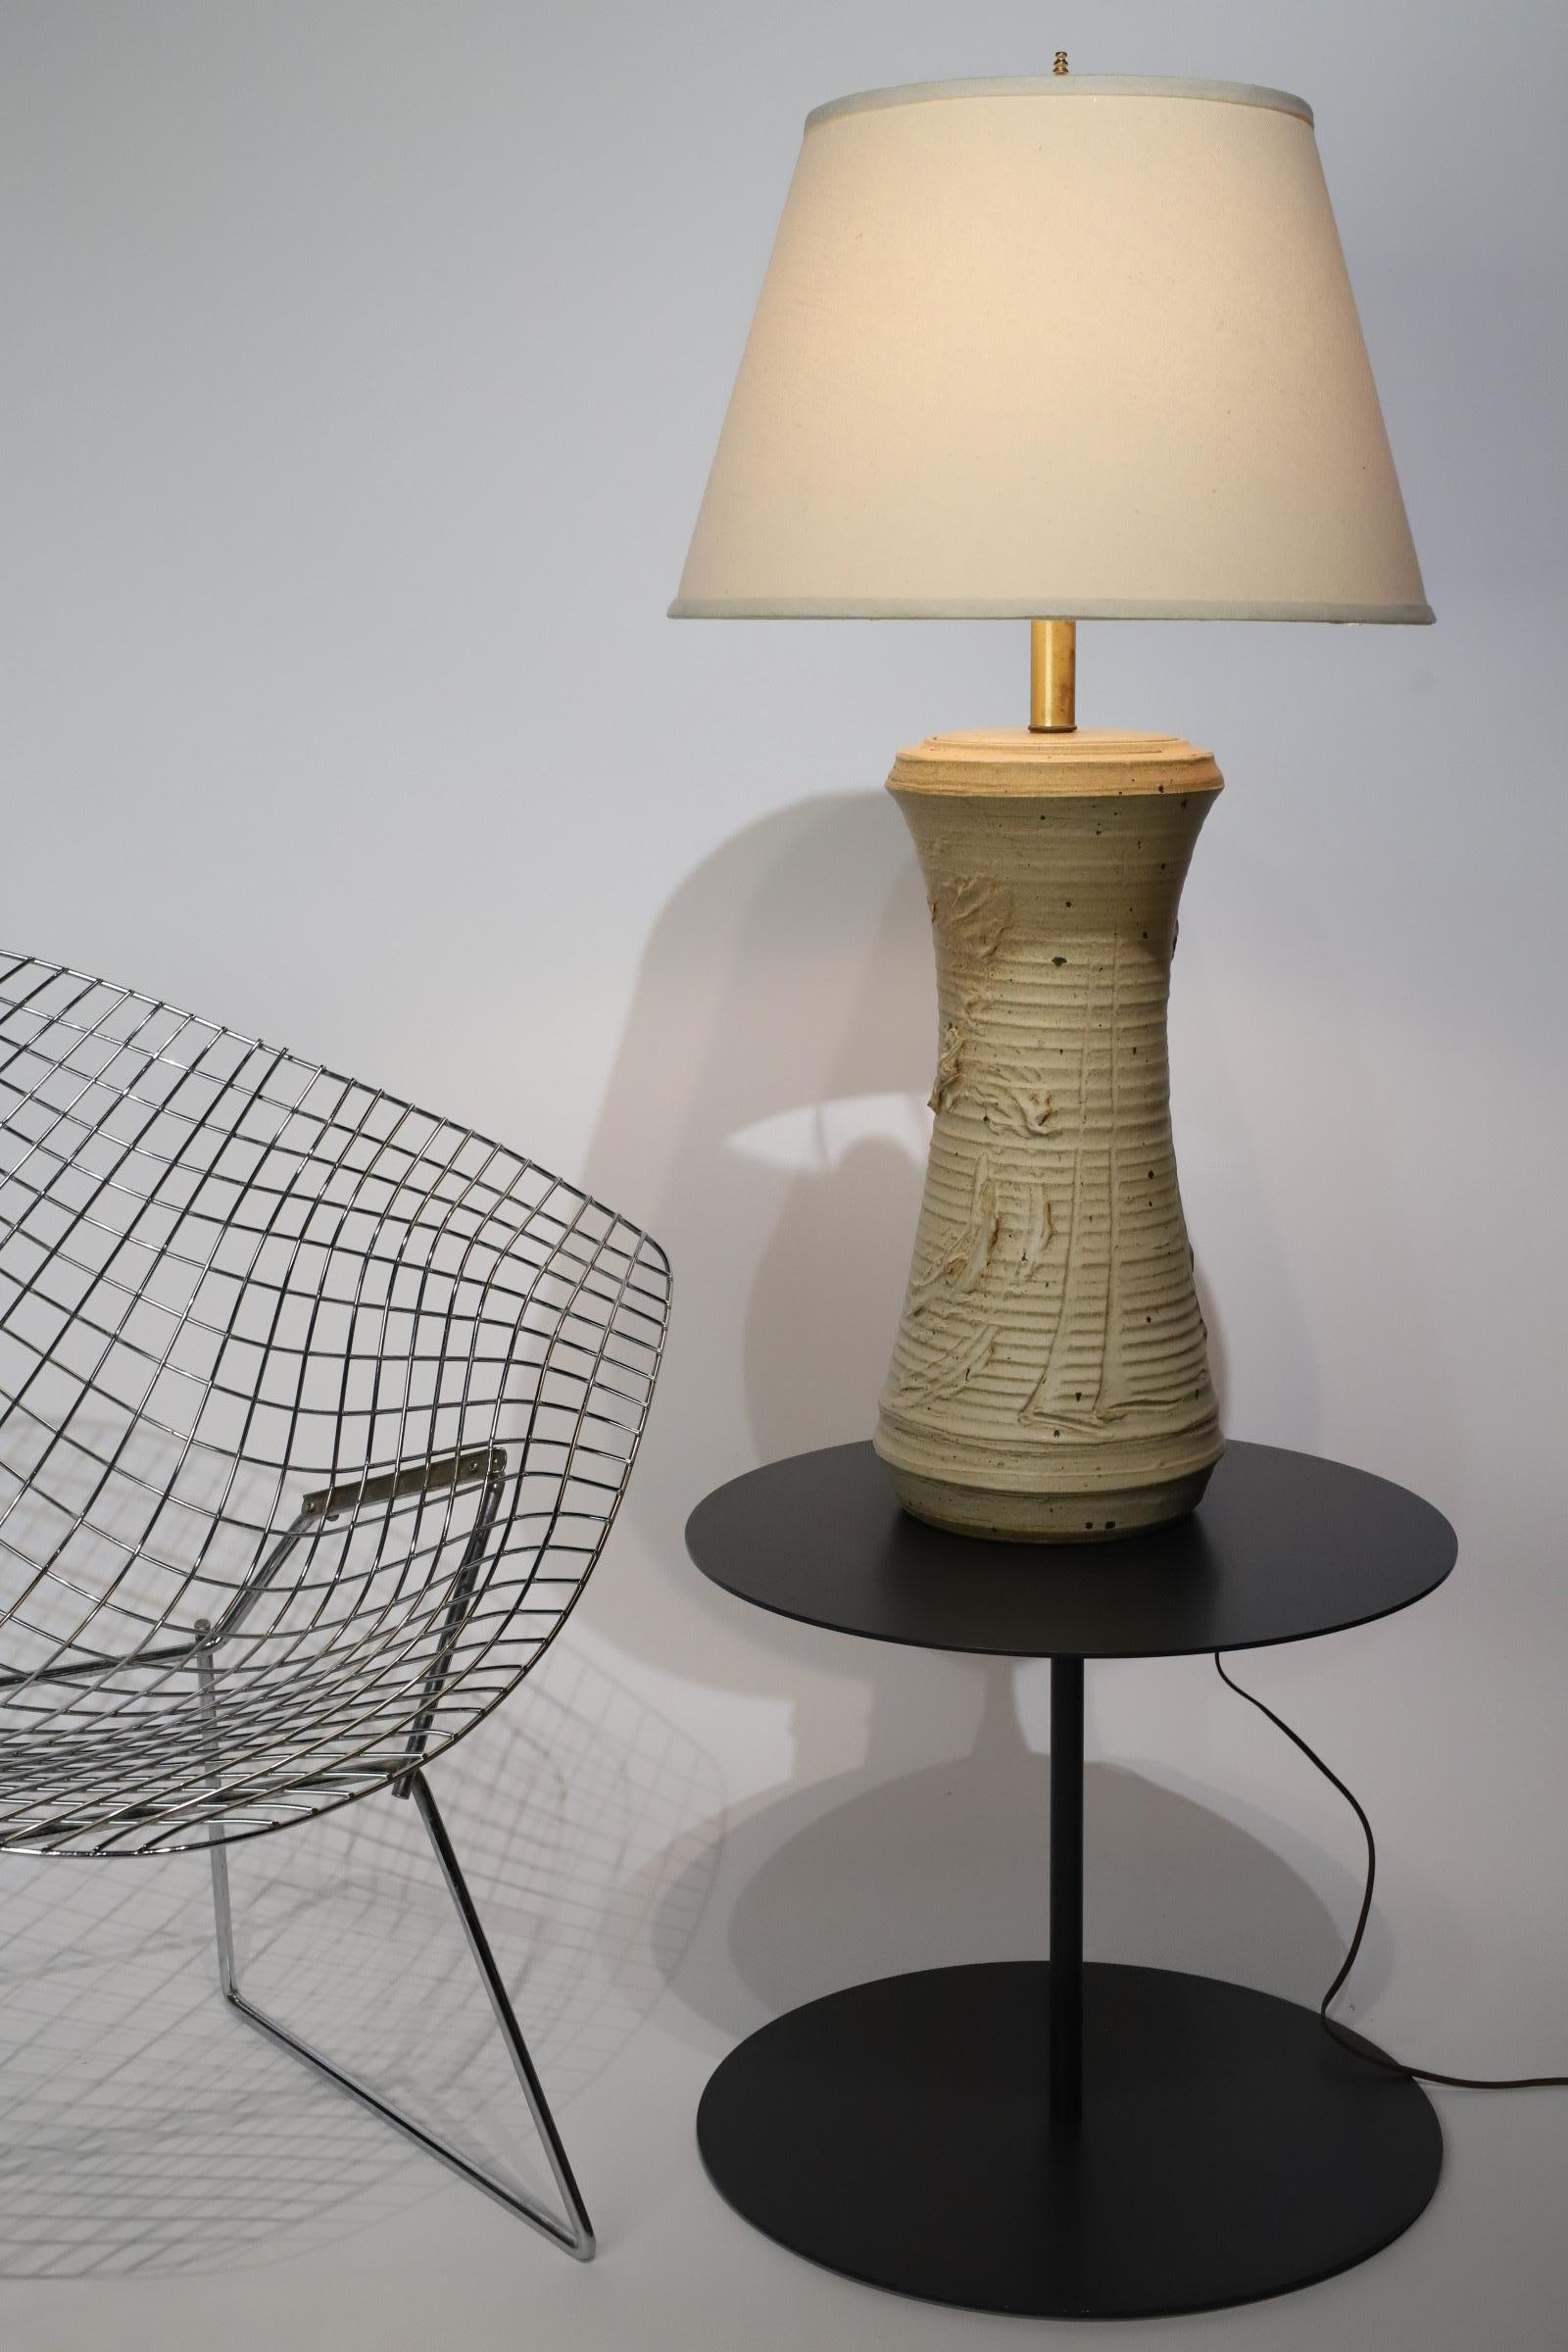 Une lampe de table captivante en céramique, délicatement conçue par l'artiste talentueux Bob Kinzie pour Affiliated Craftsmen. Cette lampe remarquable est un véritable témoignage de l'habileté artisanale et de la vision artistique de Kinzie, offrant